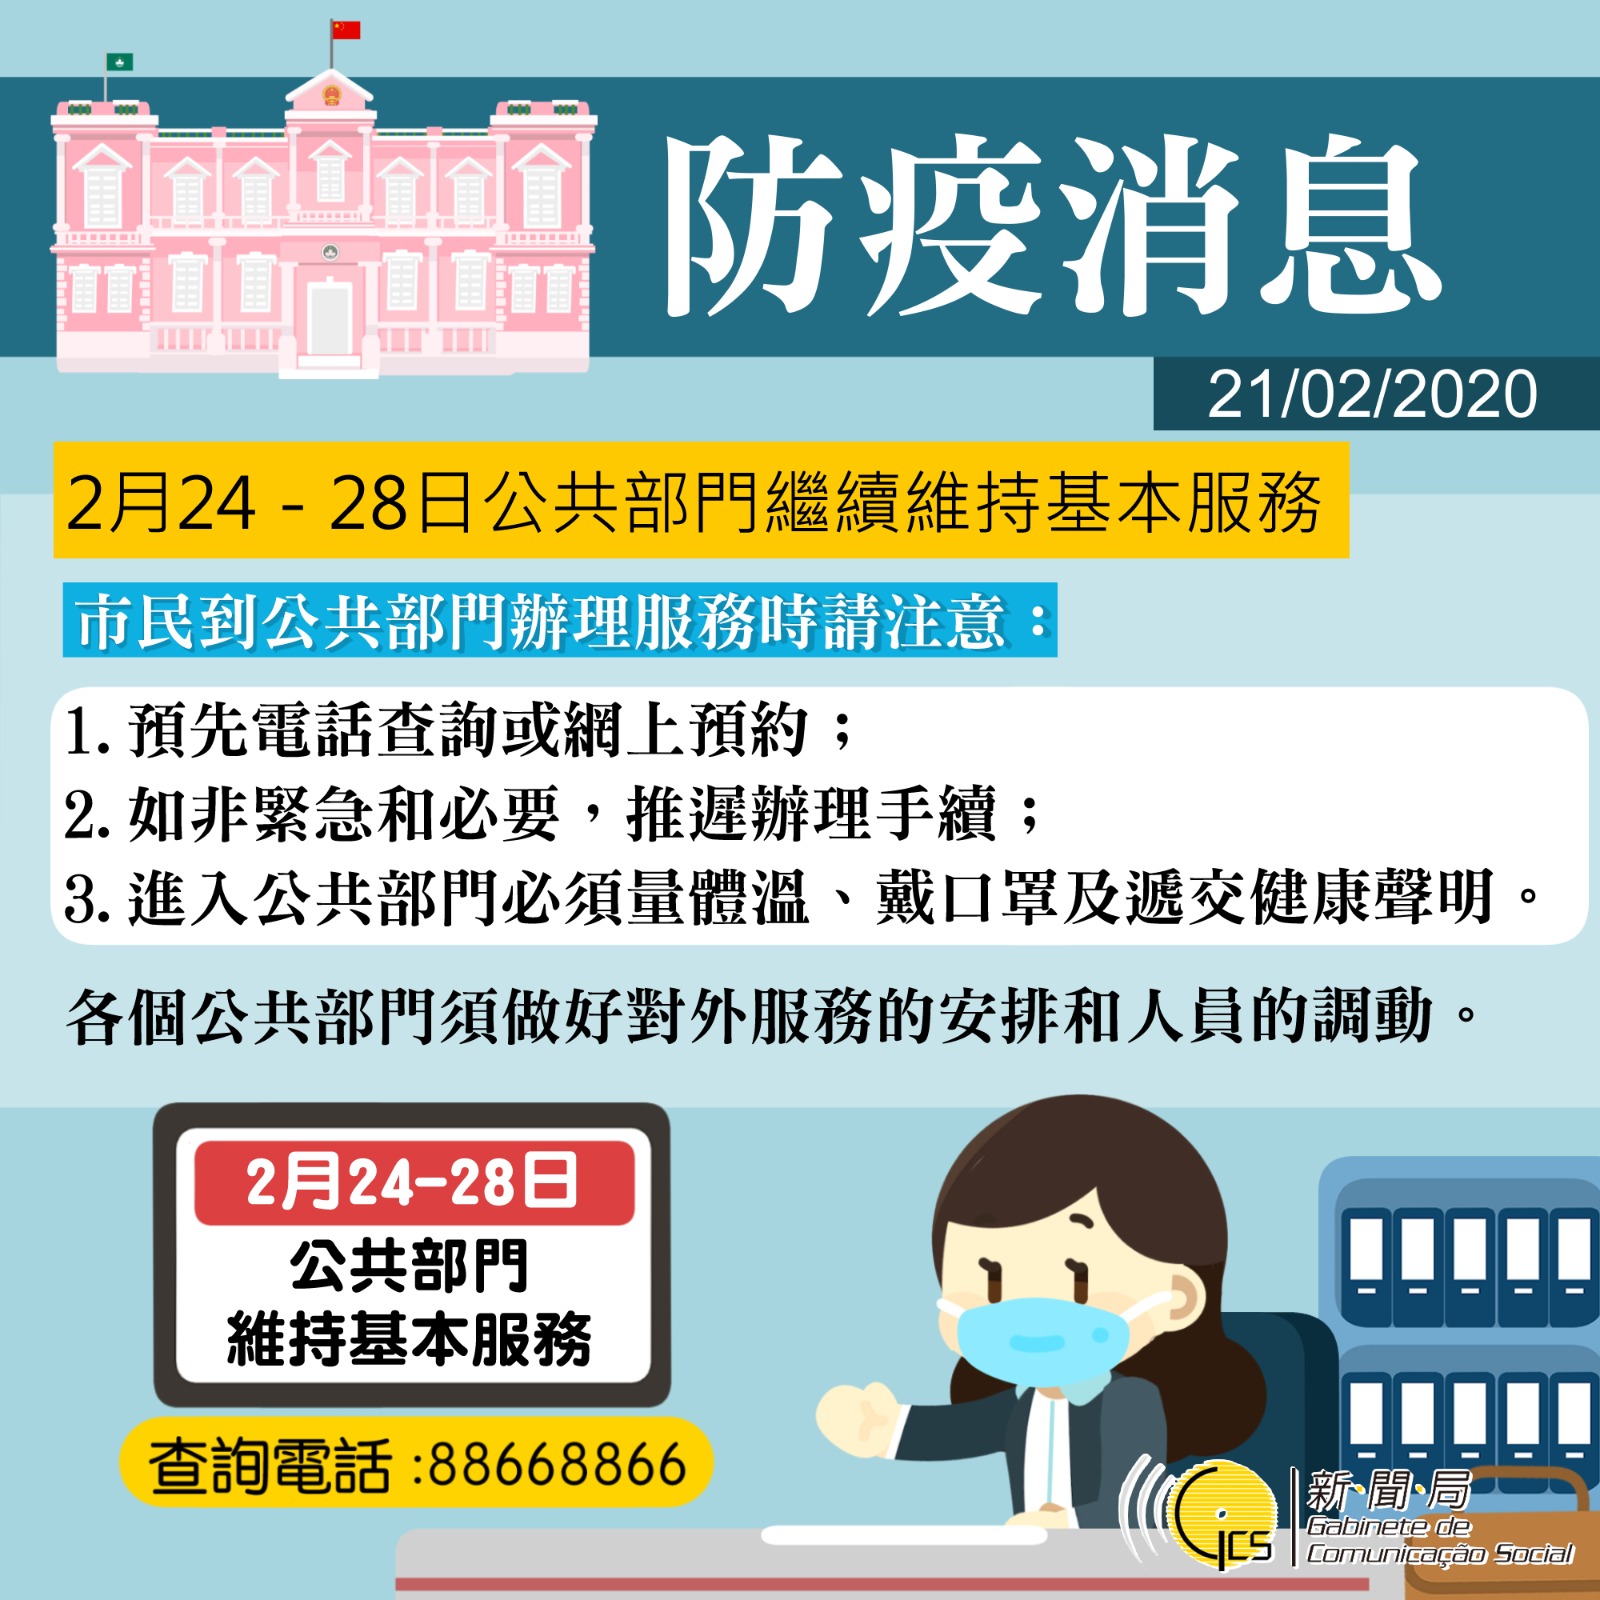 【图文包】2月24 - 28日公共部门继续维持基本服务